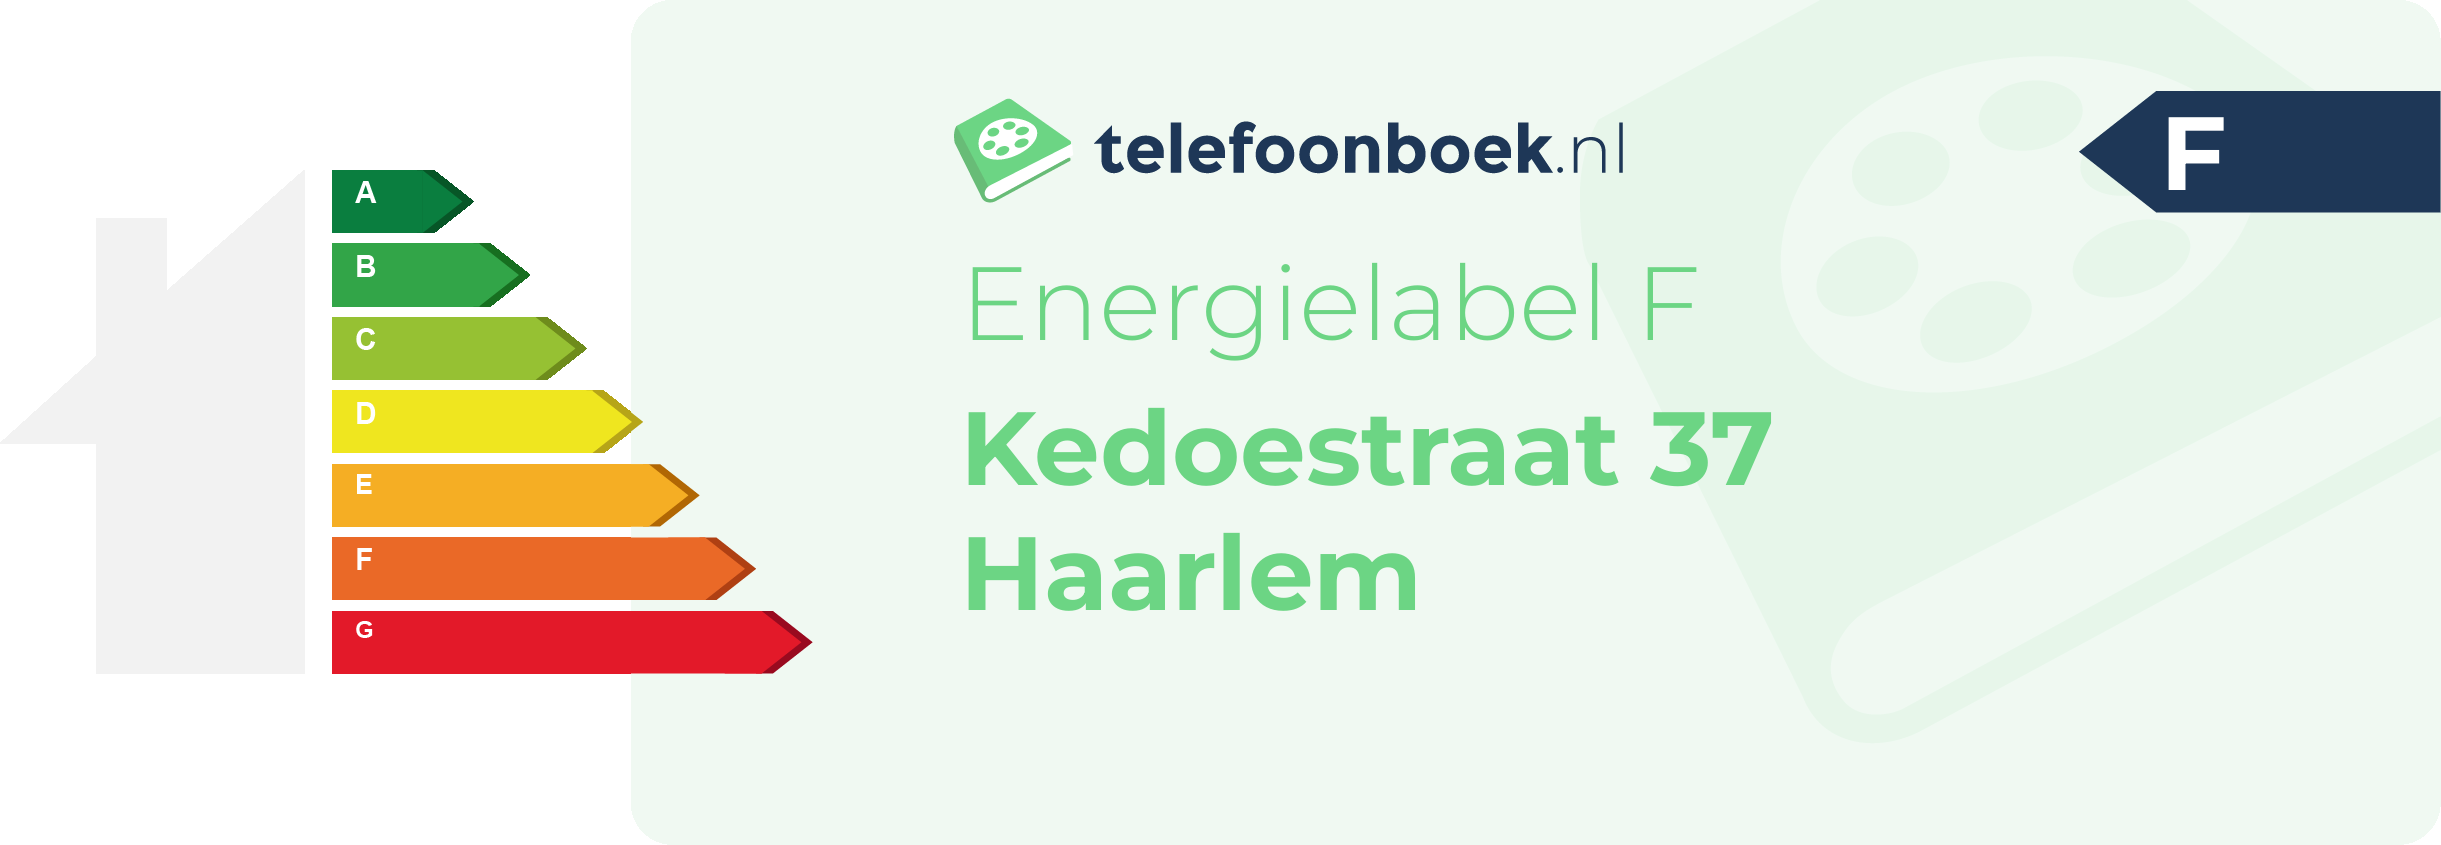 Energielabel Kedoestraat 37 Haarlem